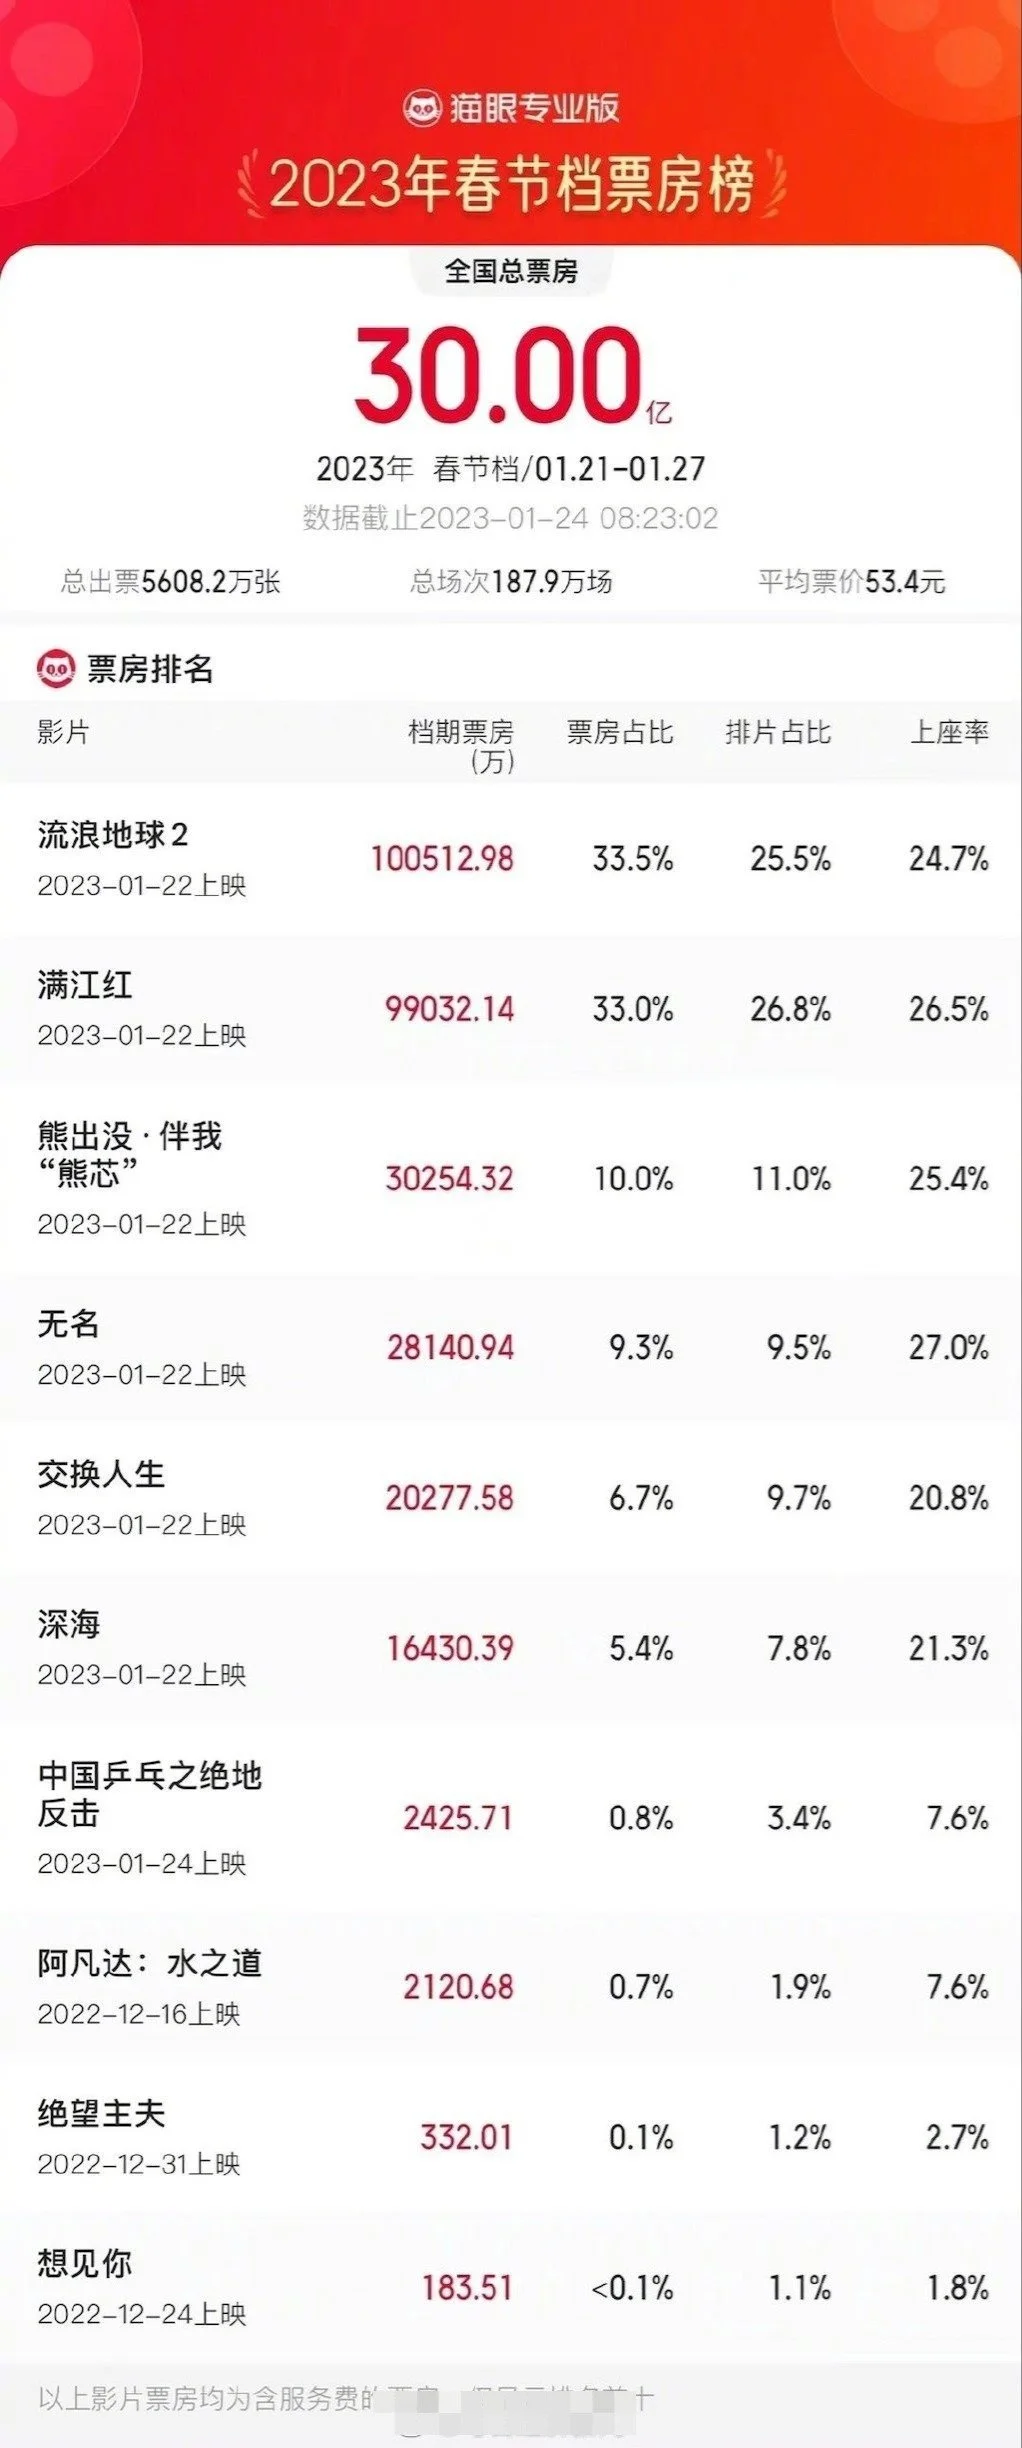 2023年春节档总票房破30亿元 中国电影票房暂列全球第一